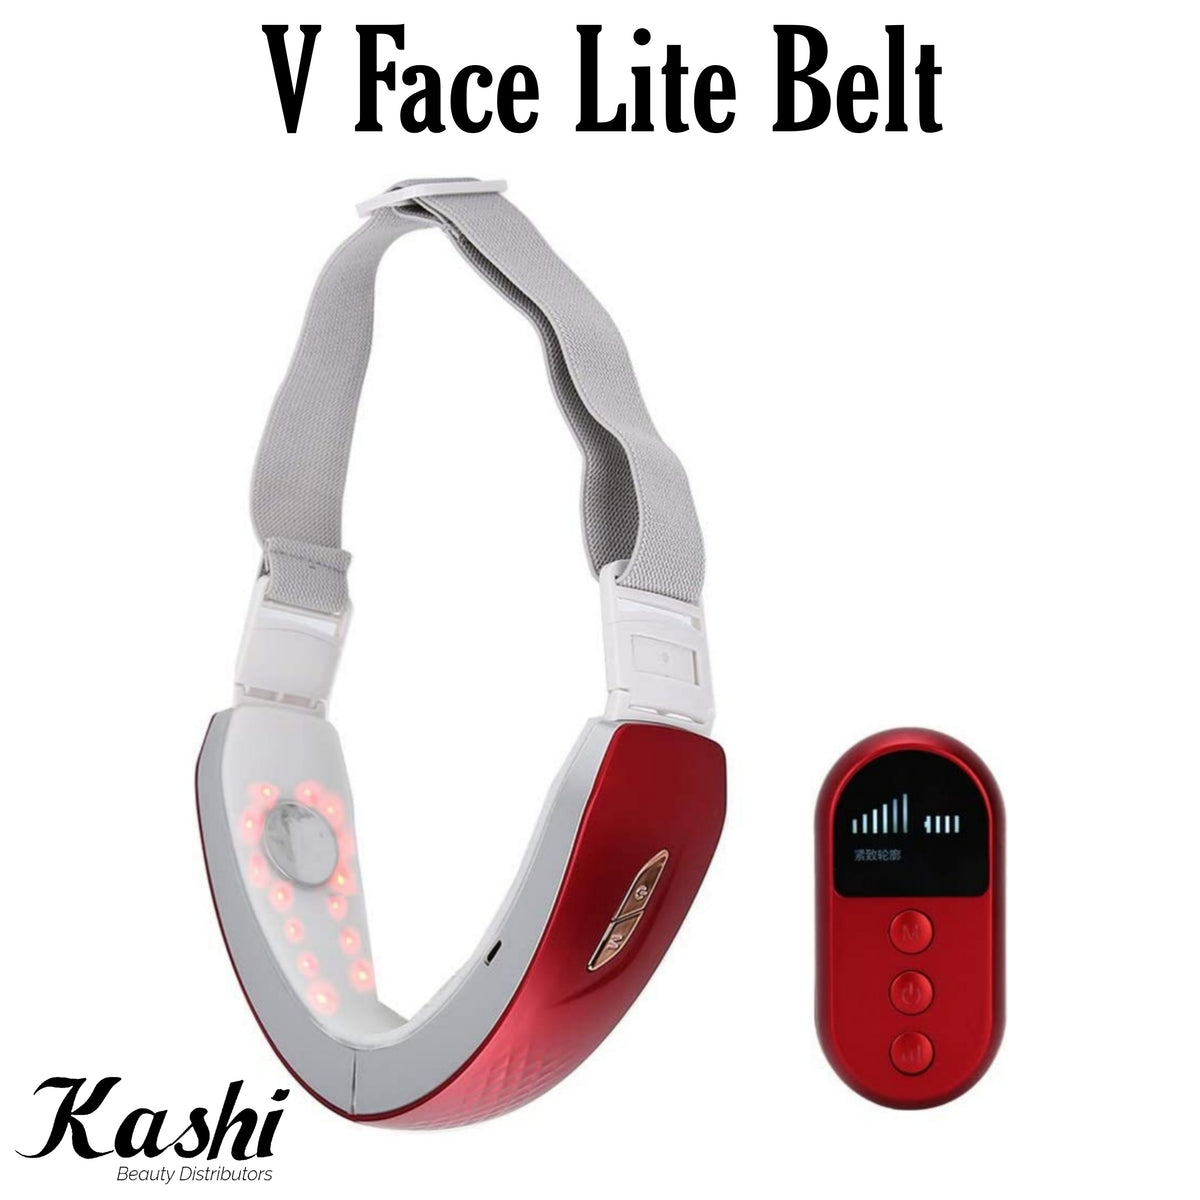 V Face Lite Belt – Kashi Supply